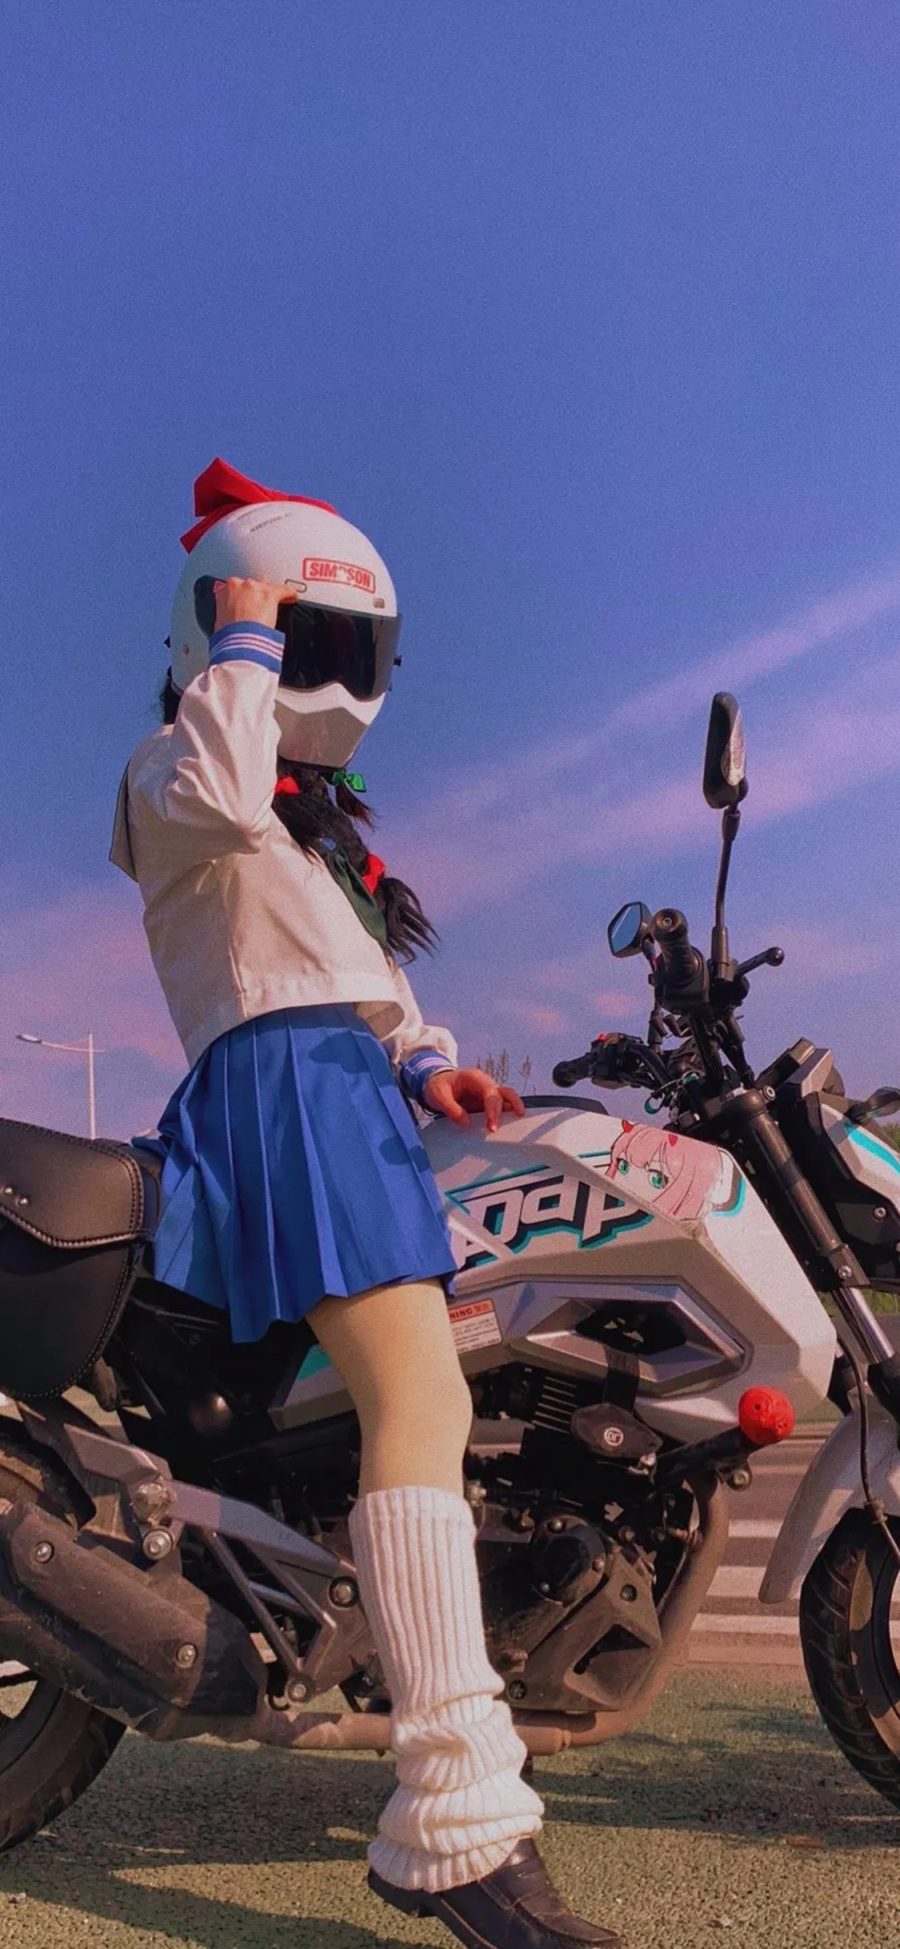 [2436×1125]机车 摩托车 少女 头盔 苹果手机美女壁纸图片